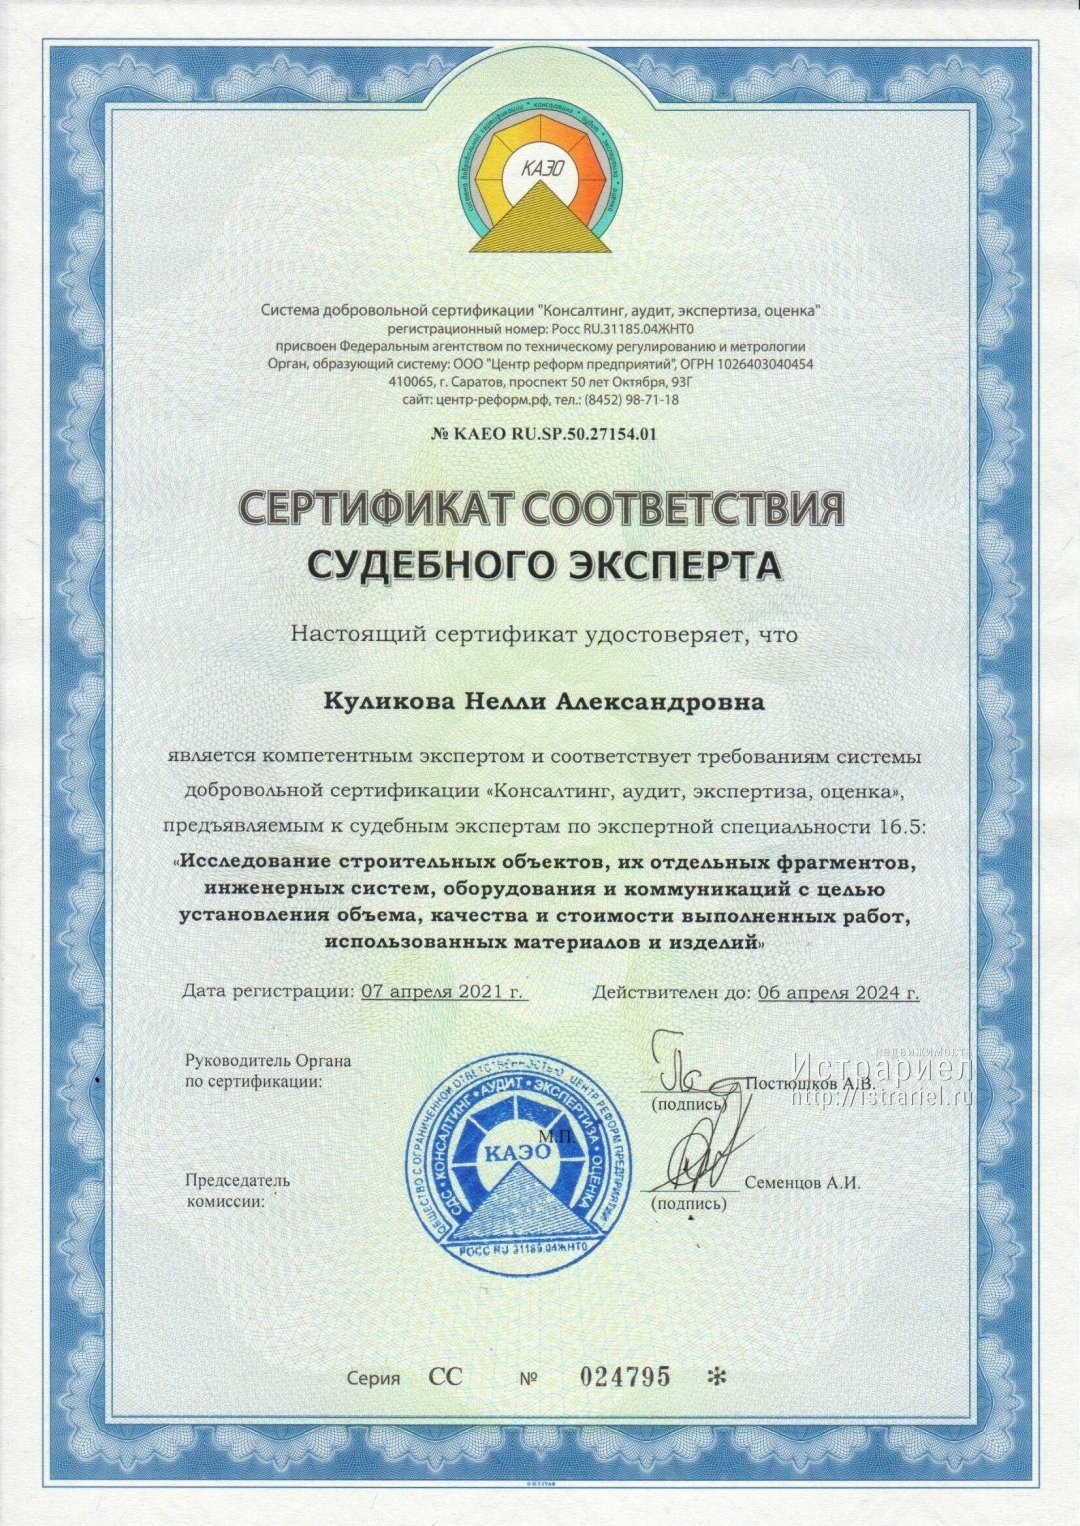 Сертификат судебного эксперта по специальности исследование строительных объектов